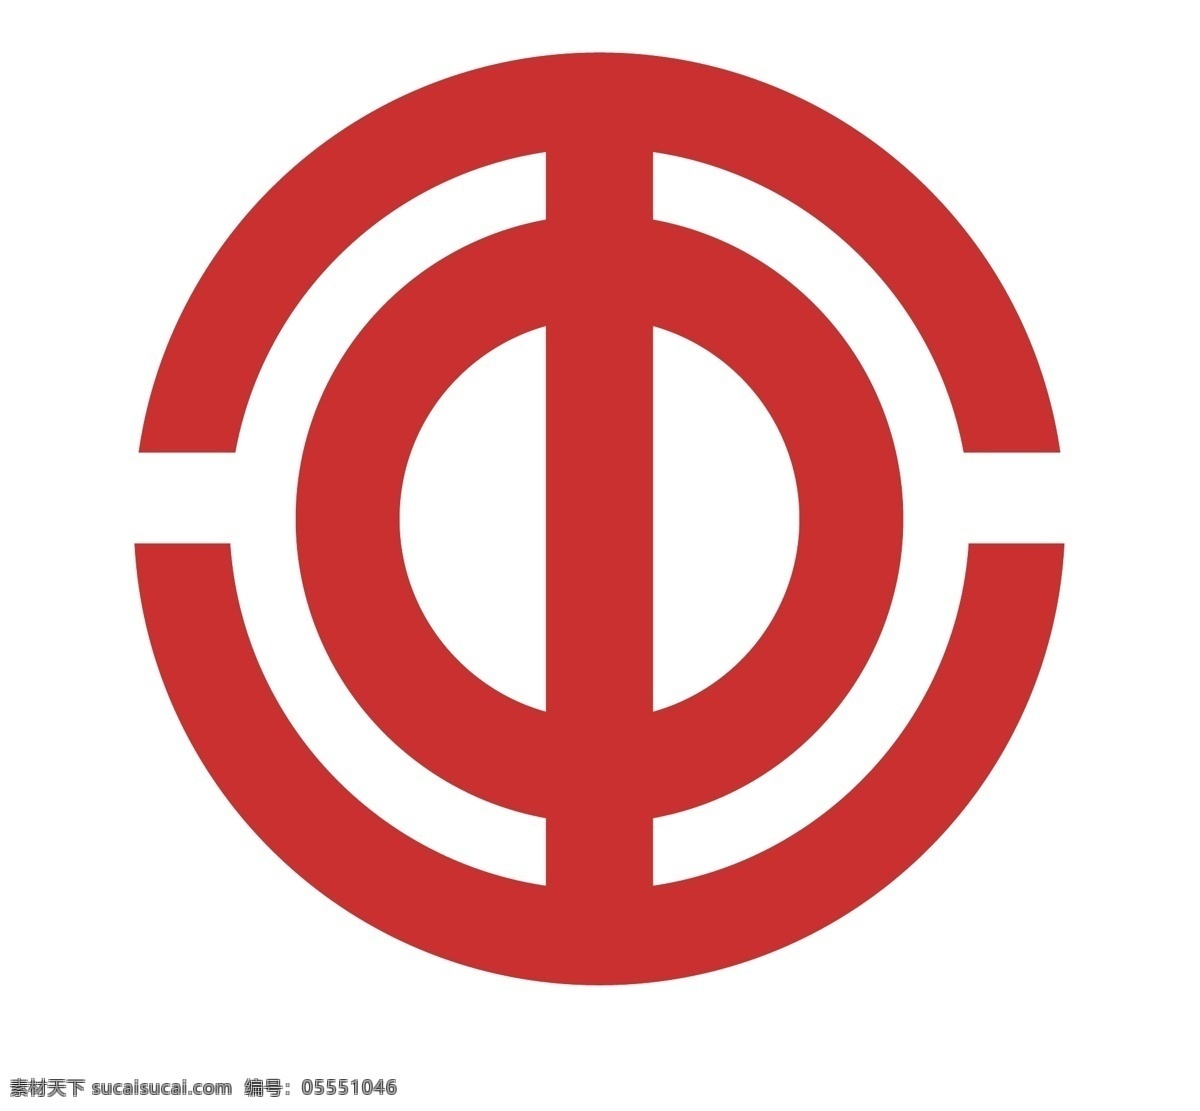 工会标志图片 工会标志 logo 农民工 人民 政府 标志logo logo设计